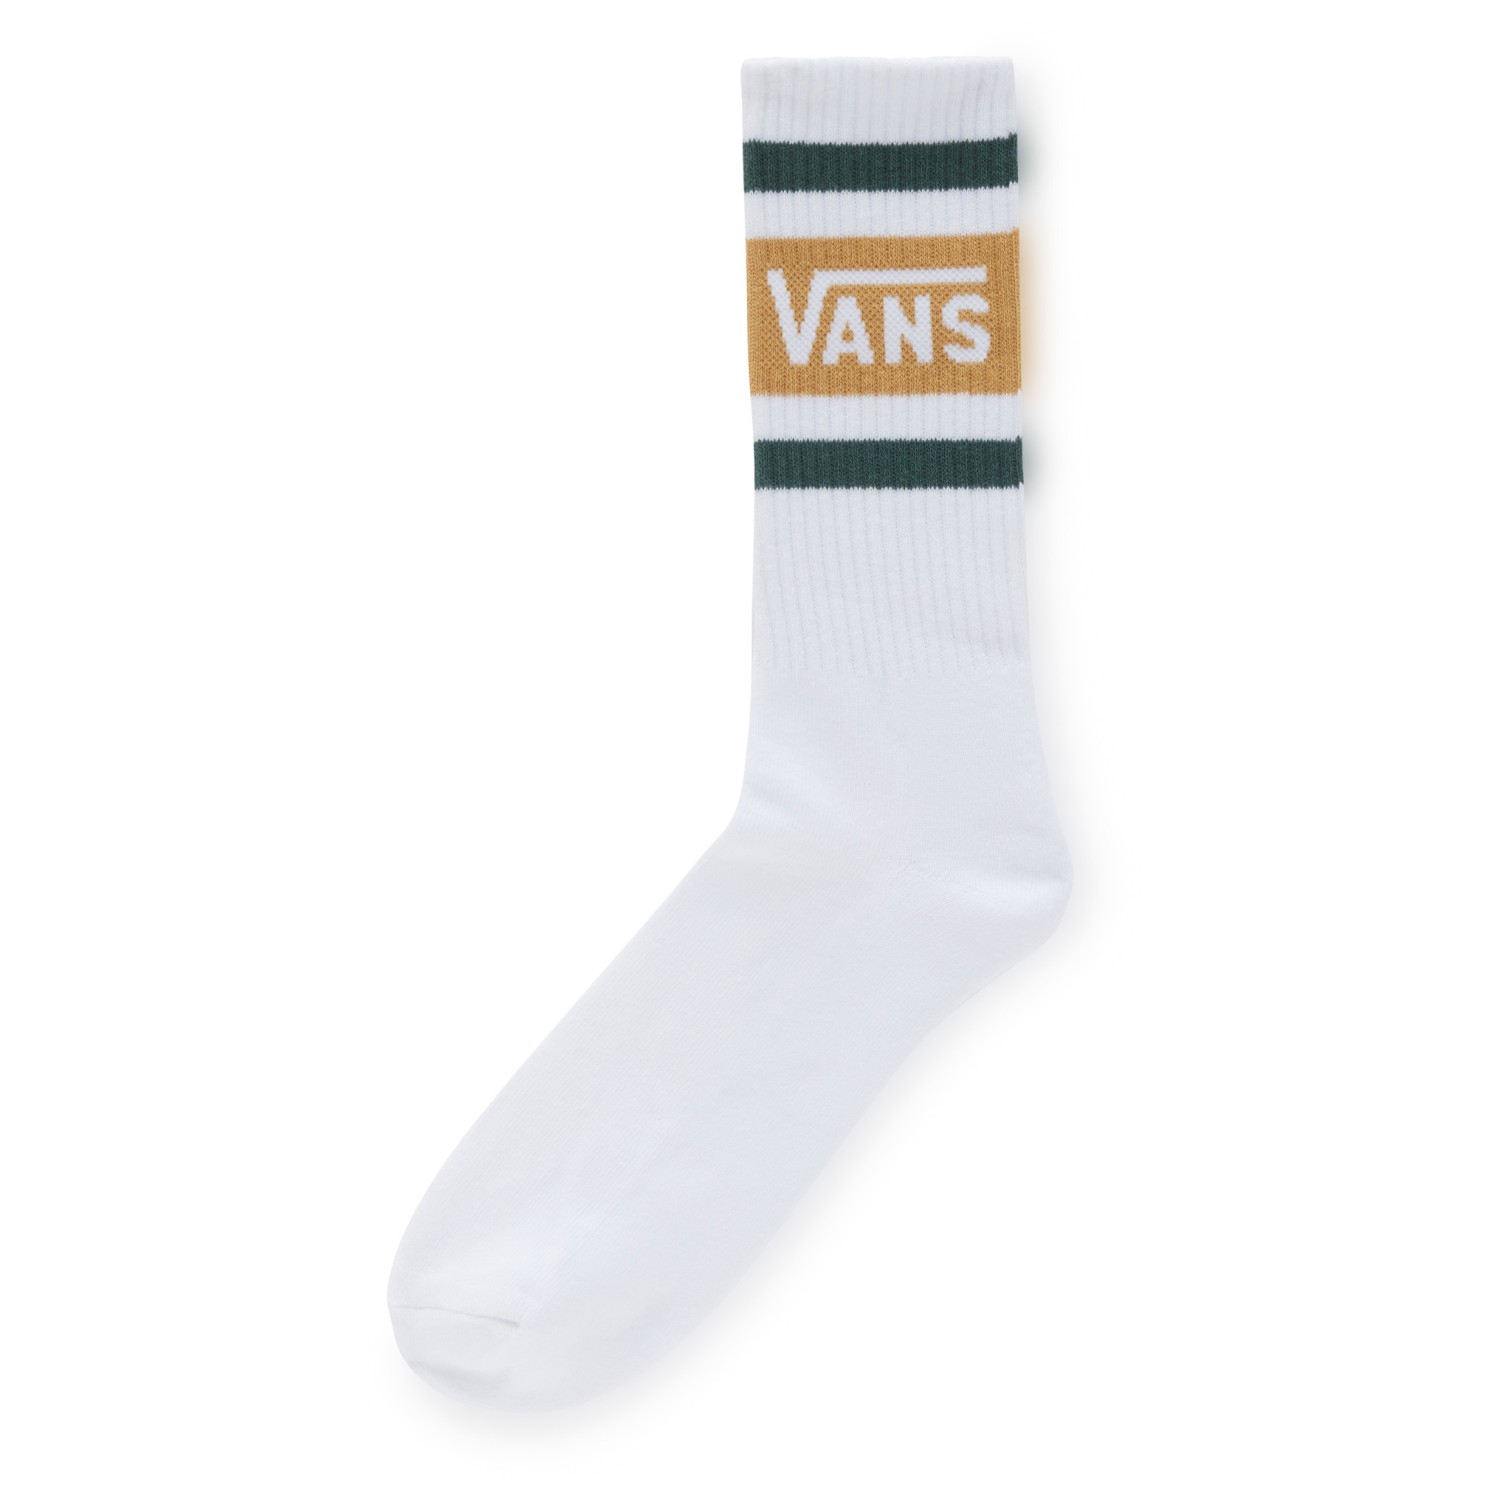 Многофункциональные носки Vans Vans Drop V Crew, цвет Antelope футболка с принтом arched vans цвет antelope